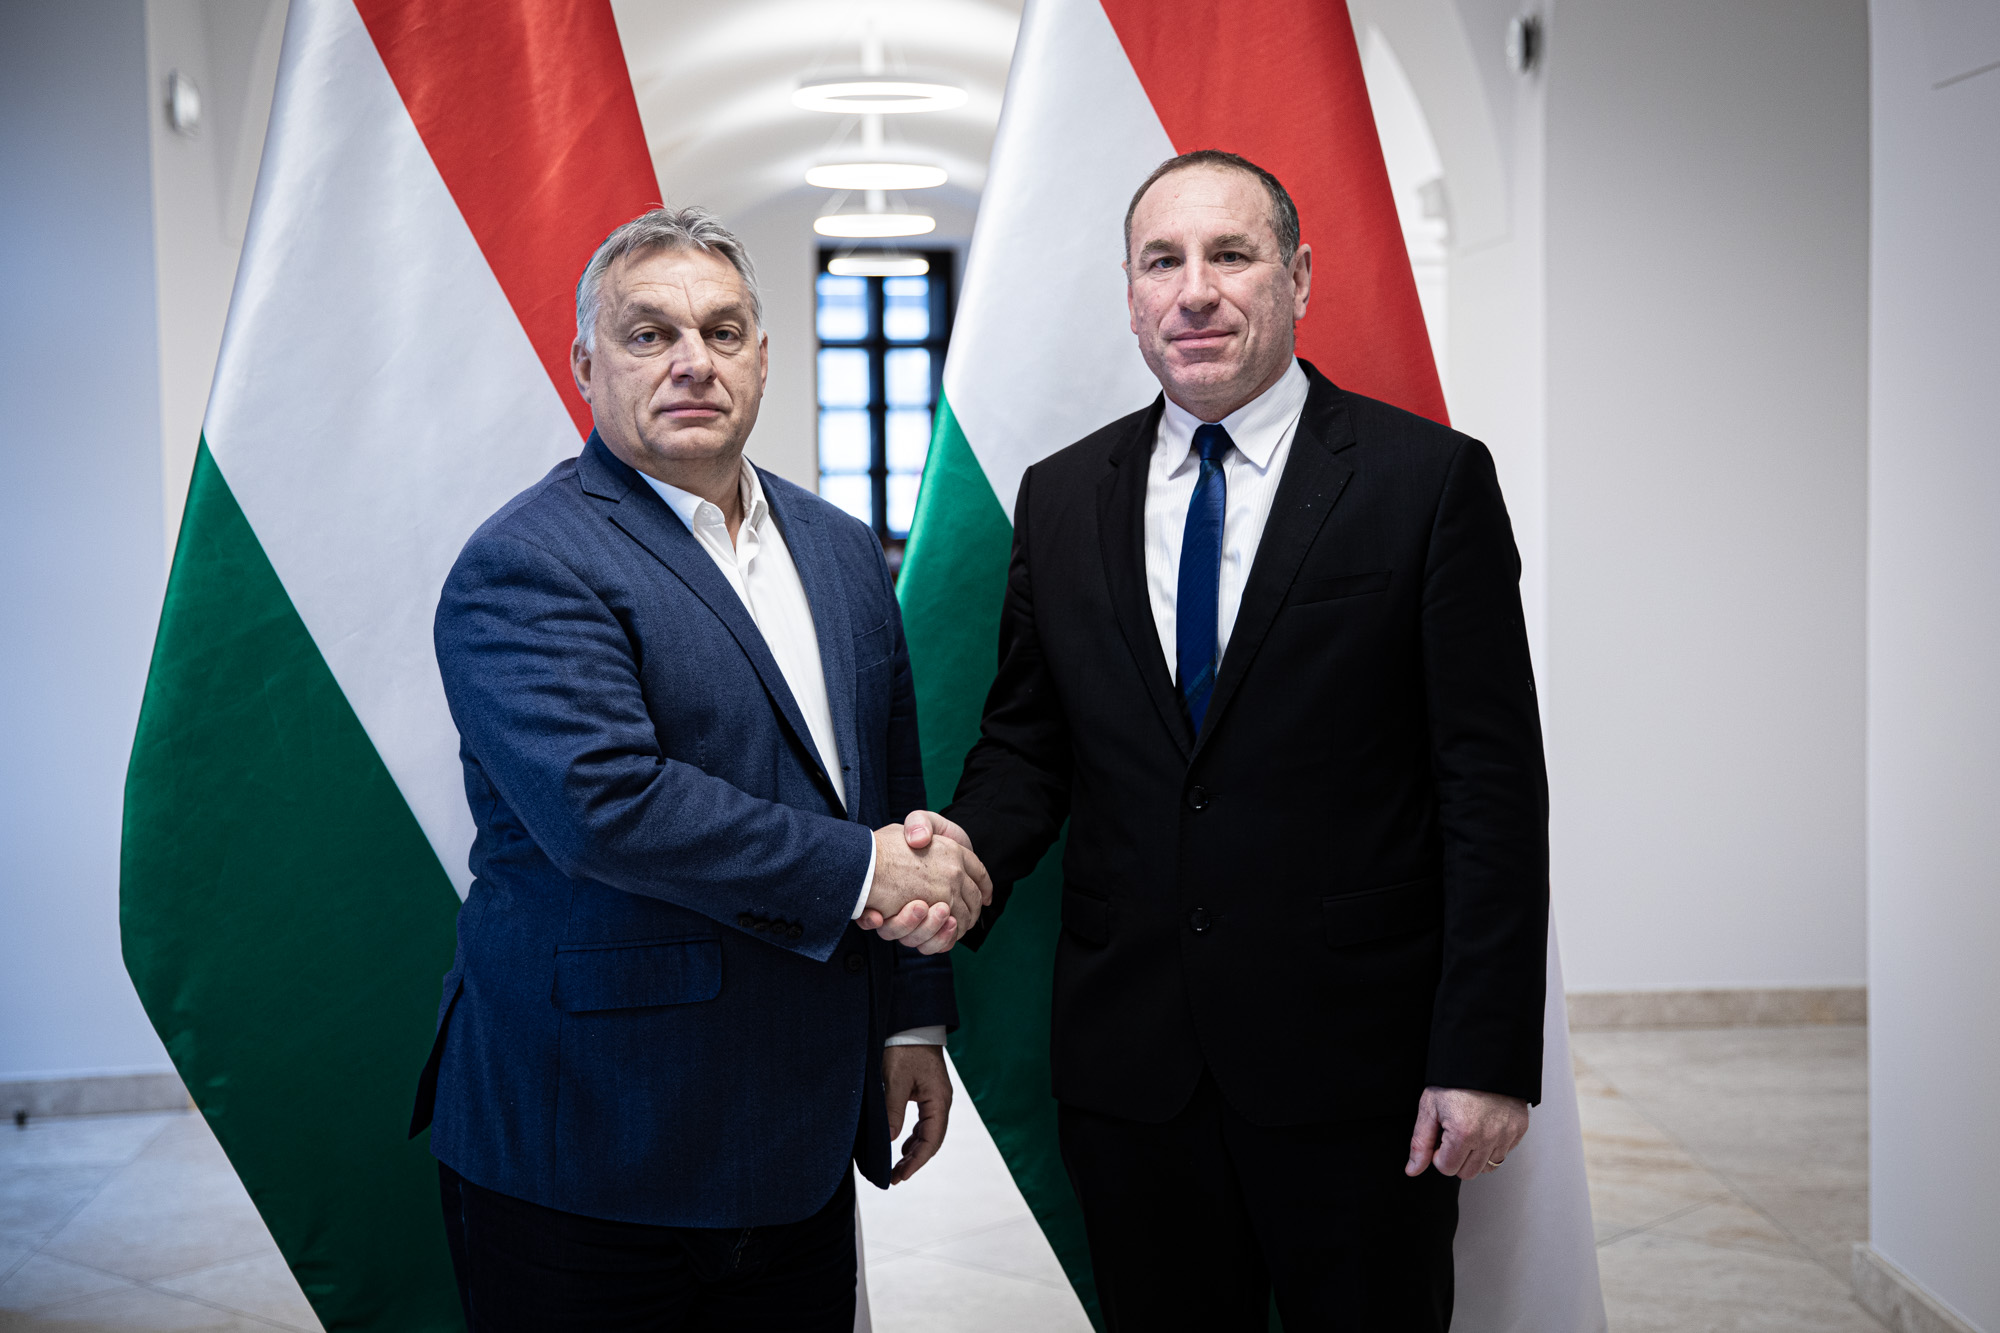 Egymás után vallottak a polgármesterek arról, hogyan kellett volna visszagurítaniuk az uniós pénzeket a Fidesz kampányába